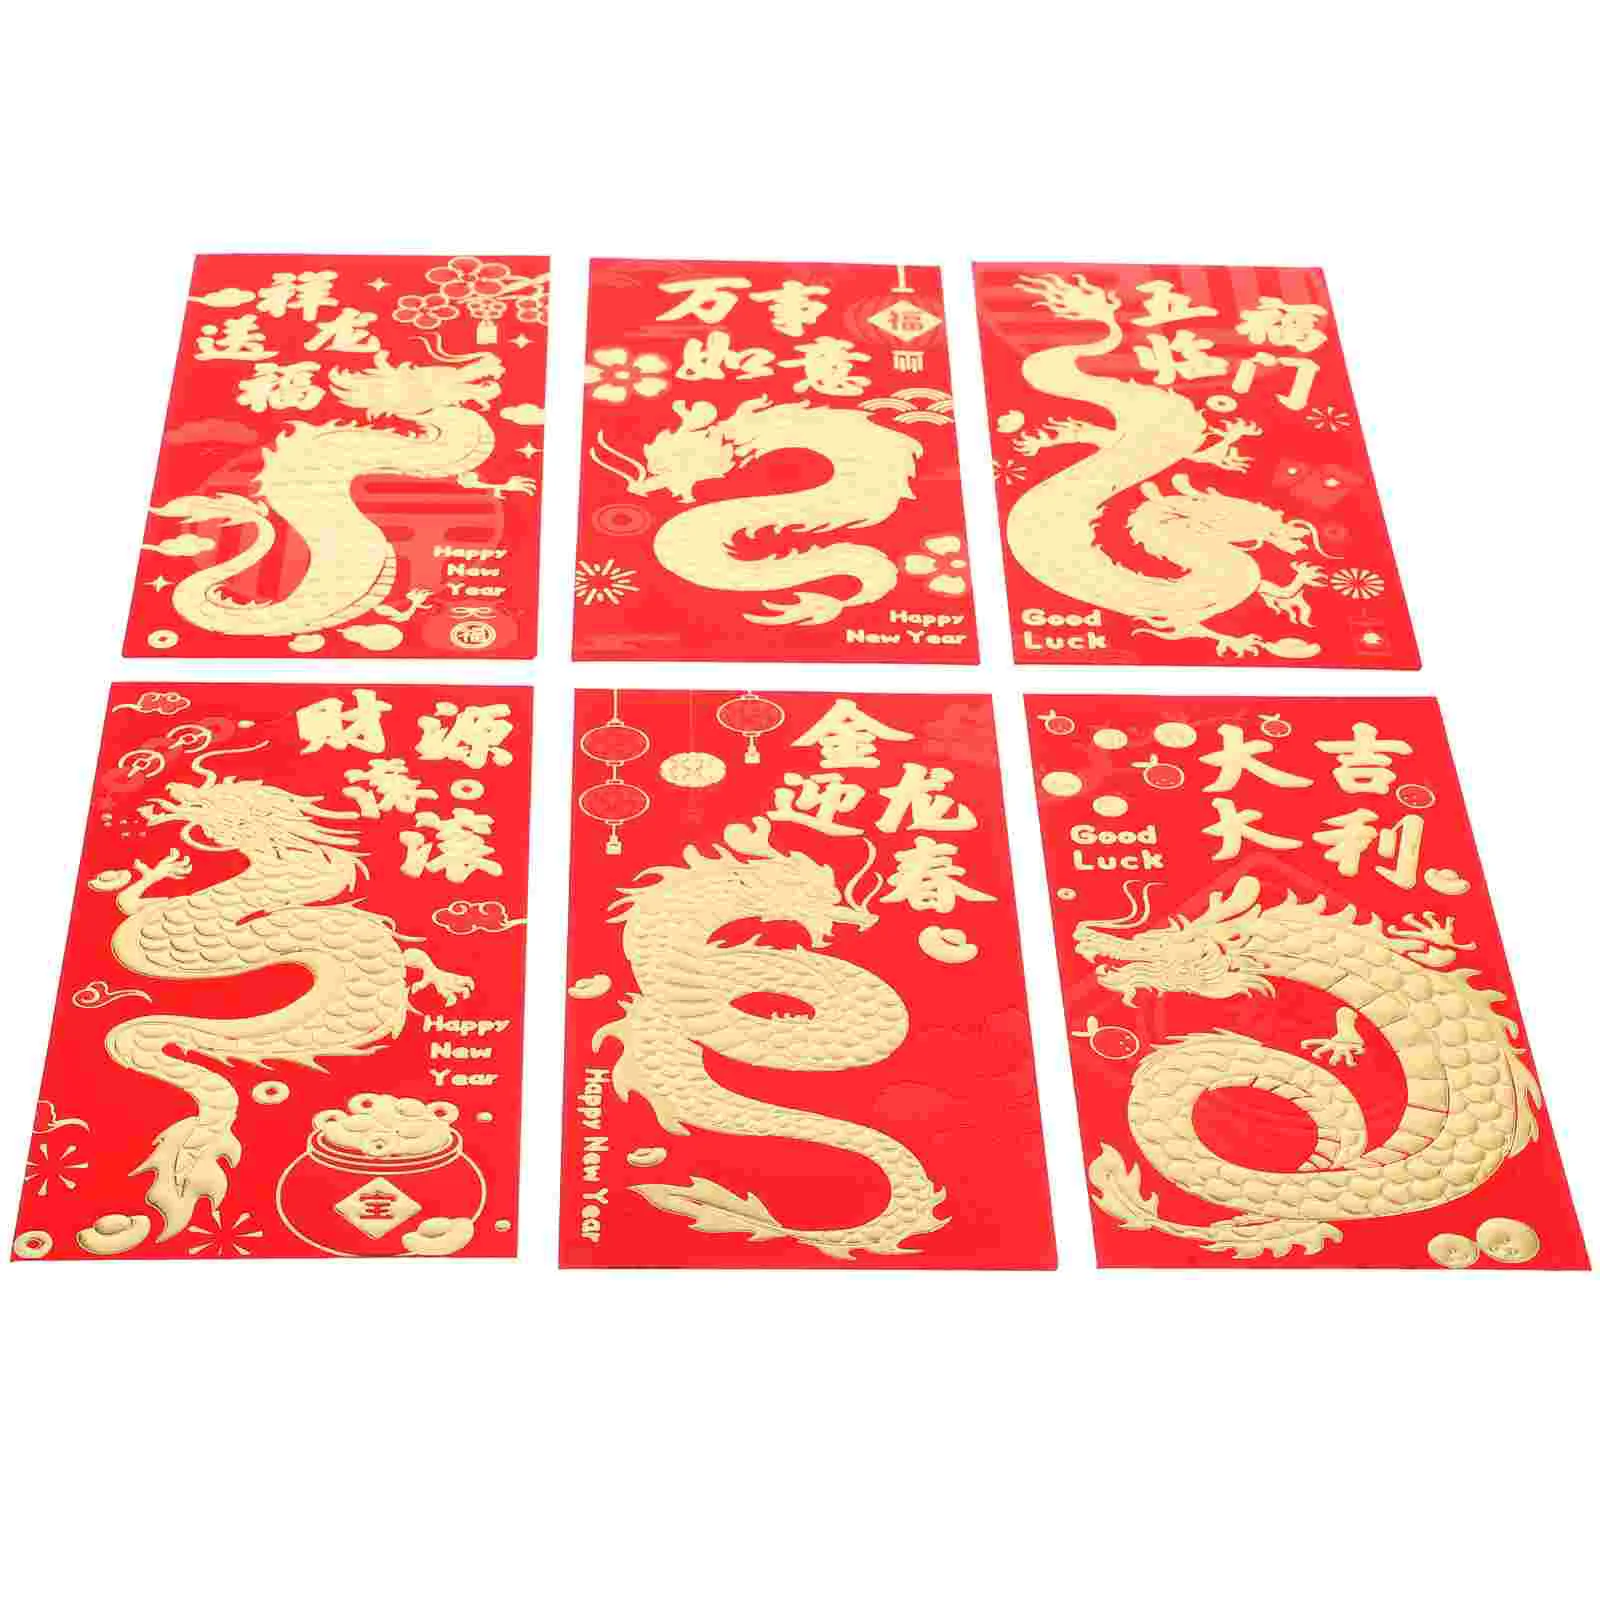 

Конверты на новый год, 30 шт., тысяча юаней, красные бумажные конверты в китайском стиле для праздника Весны, конверты с драконом